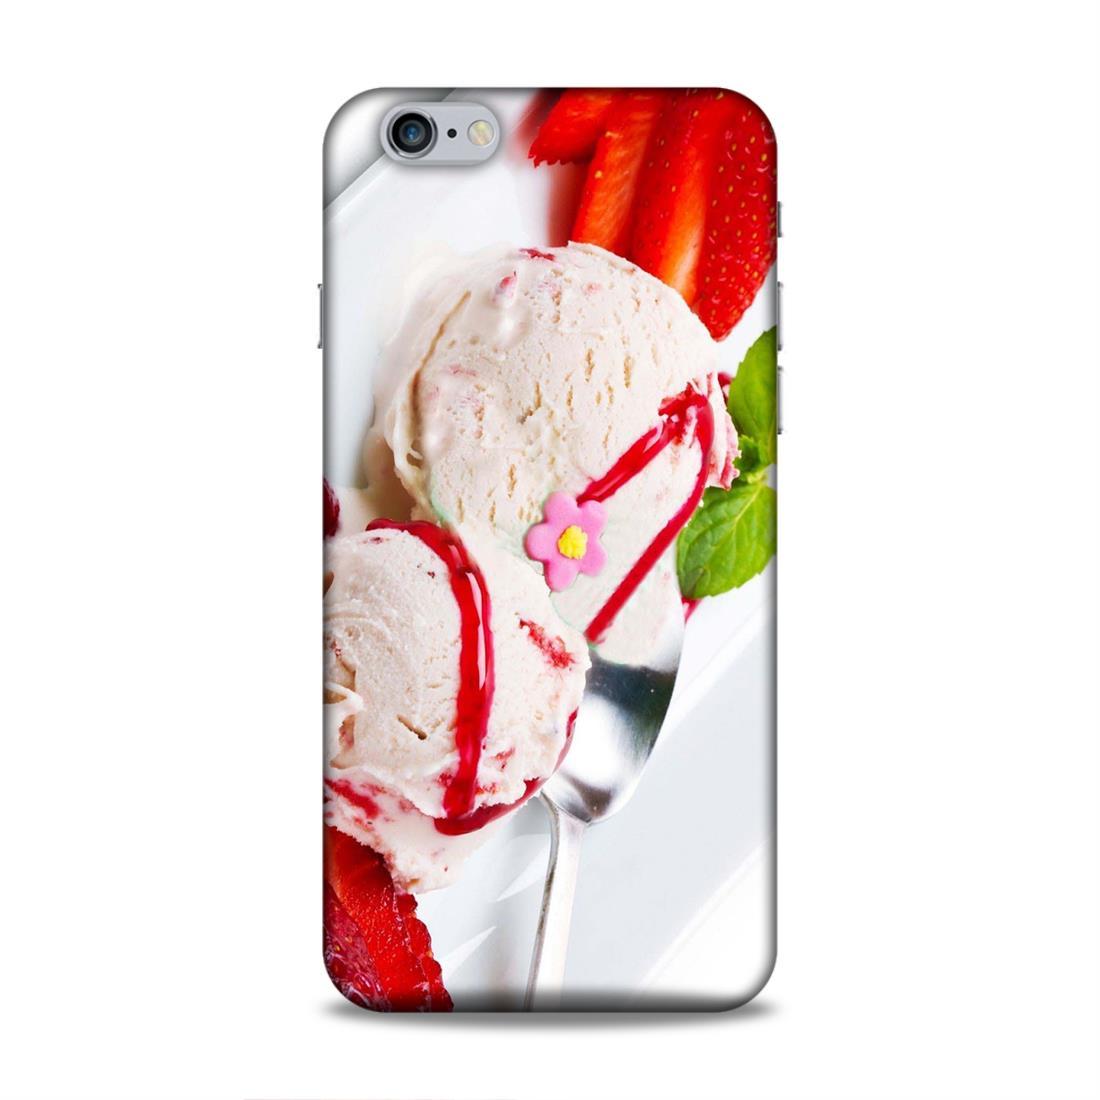 Icecream Love iPhone 6 Plus Mobile Cover